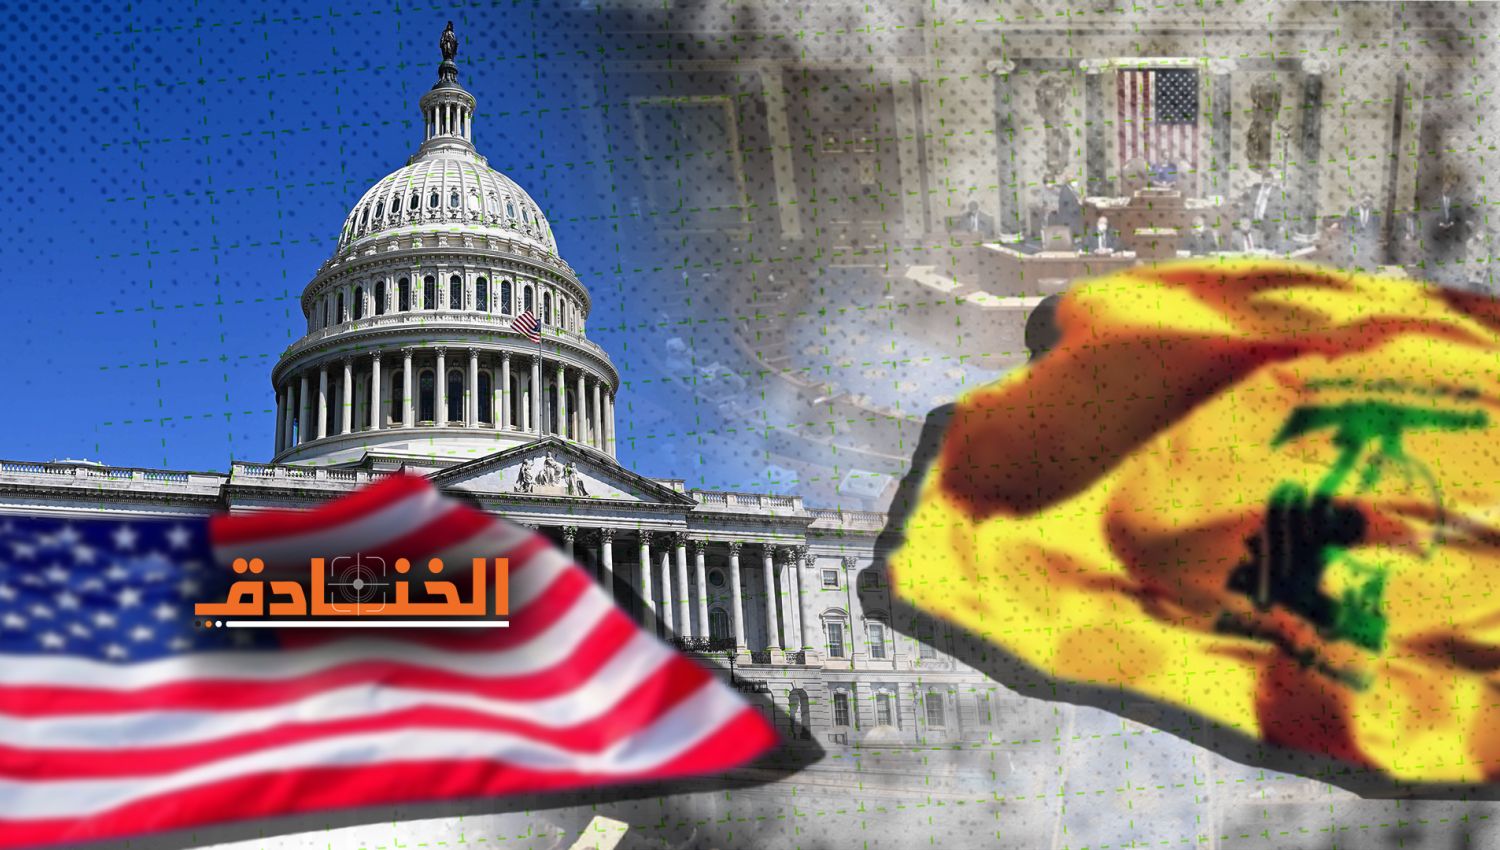 حزب الله والكونغرس الأمريكي: المعركة مستمرة